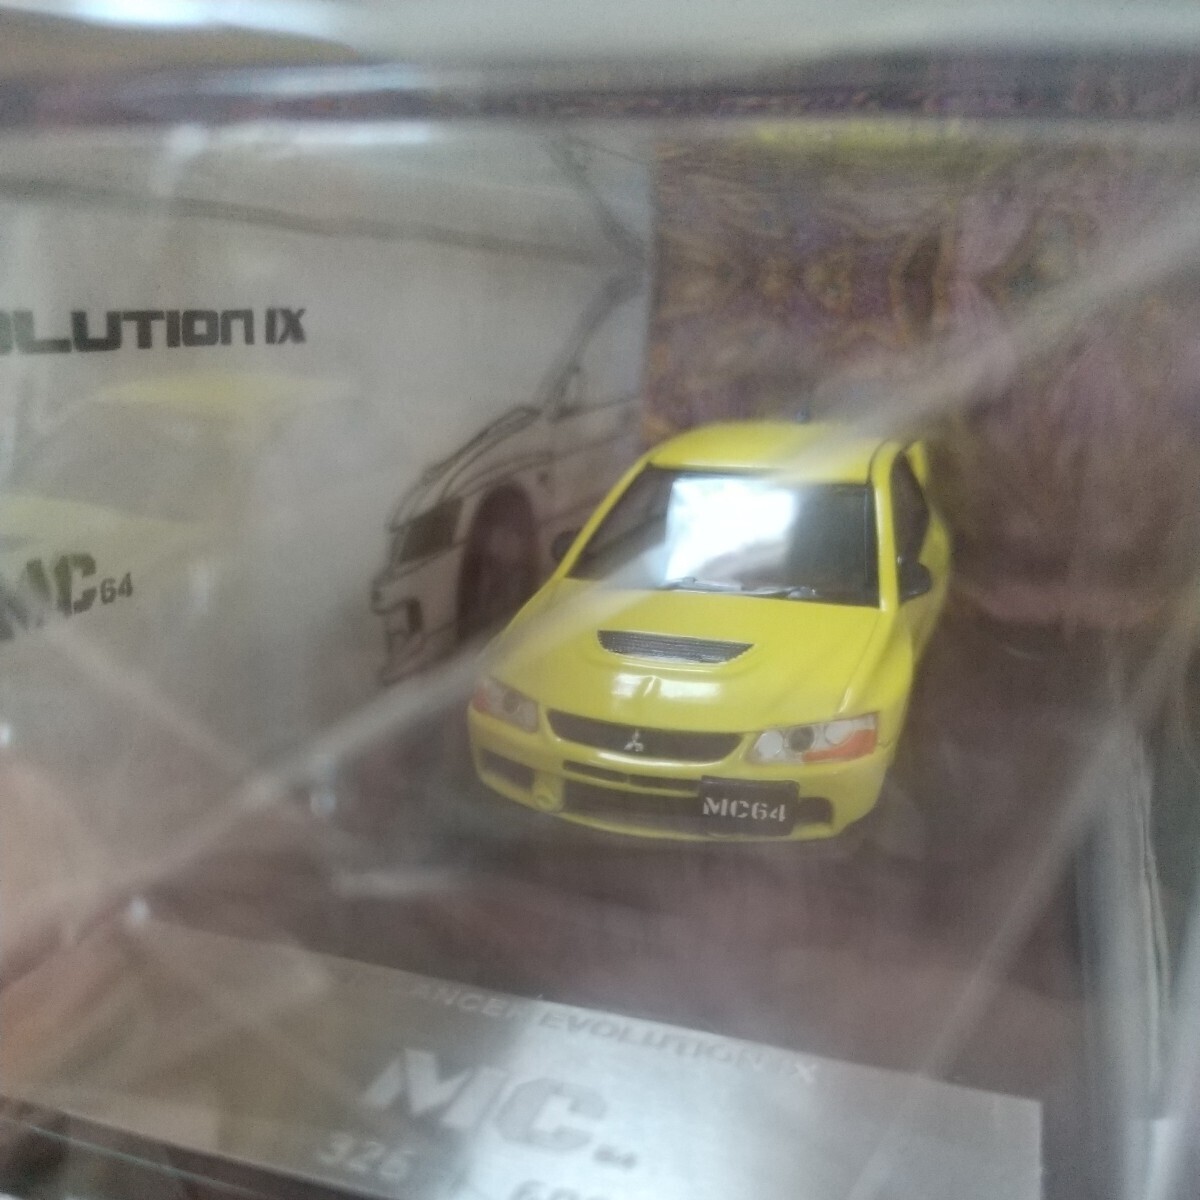  Lancer Evolution Ⅸ 1/64 желтый "Enkei" колесо MC64 правый руль ( для поиска зажигание модель Tomica Tarmac Works MiniGT)